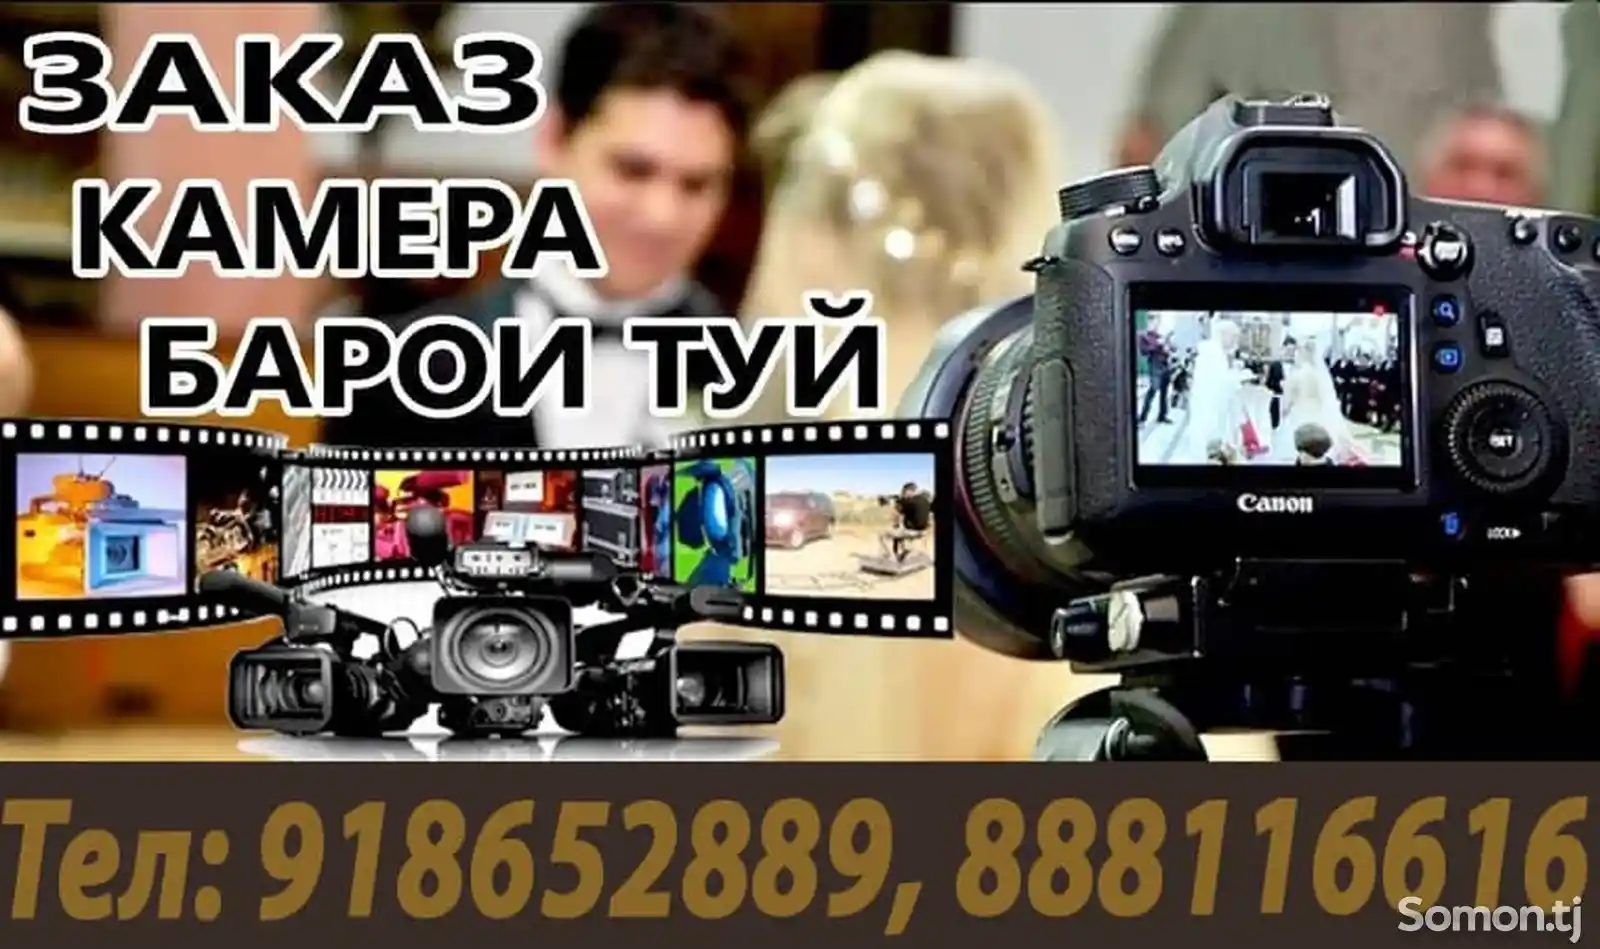 Услуги видеосъемки и фотографа-1